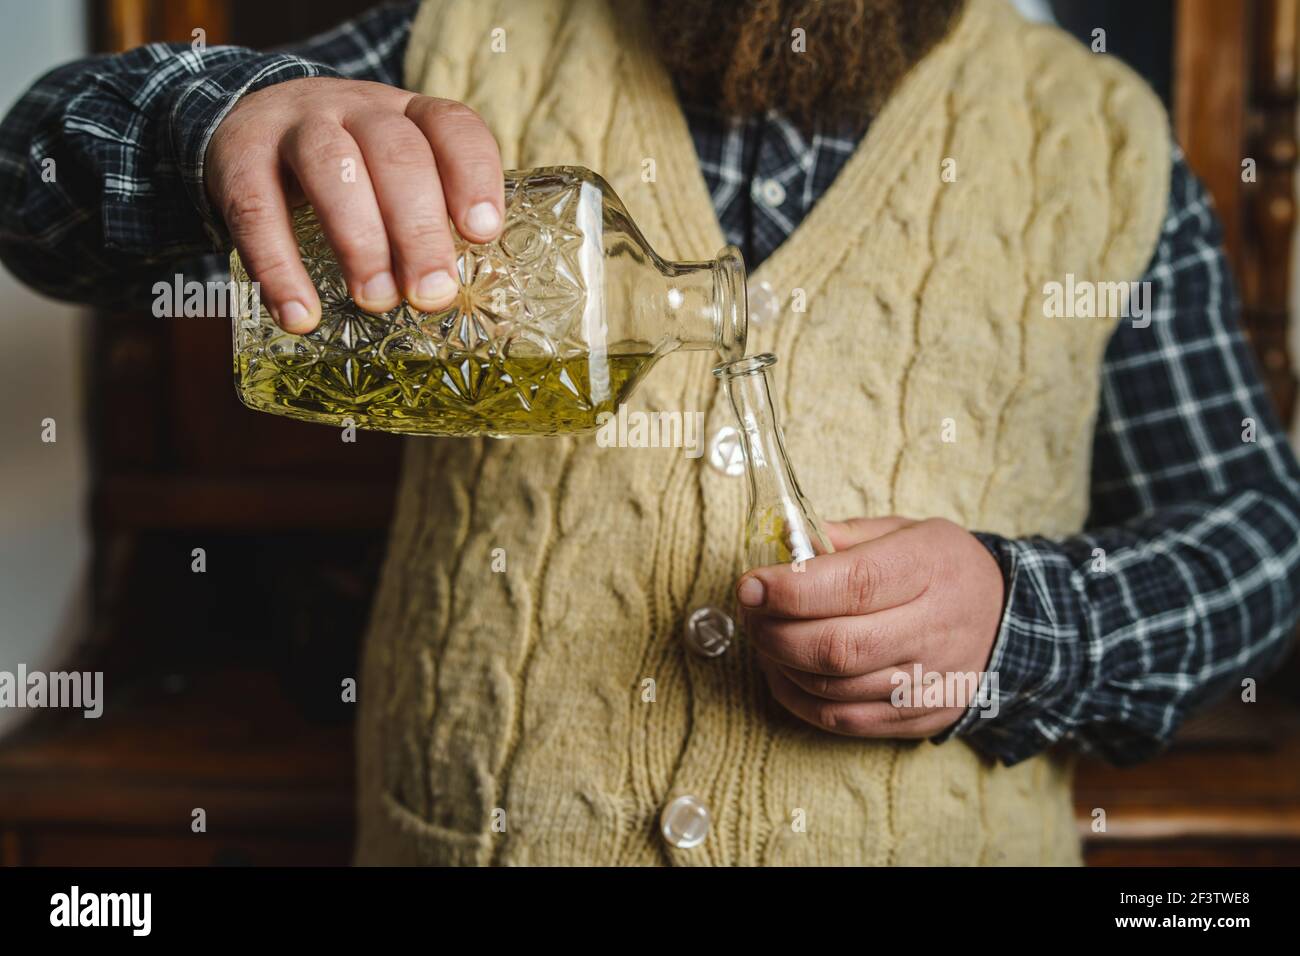 Primo piano sulle mani di un uomo sconosciuto che versa il tradizionale serbo bosniaco croato o macedone bere alcol brandy rakija o slivovitza realizzato in prugna i. Foto Stock